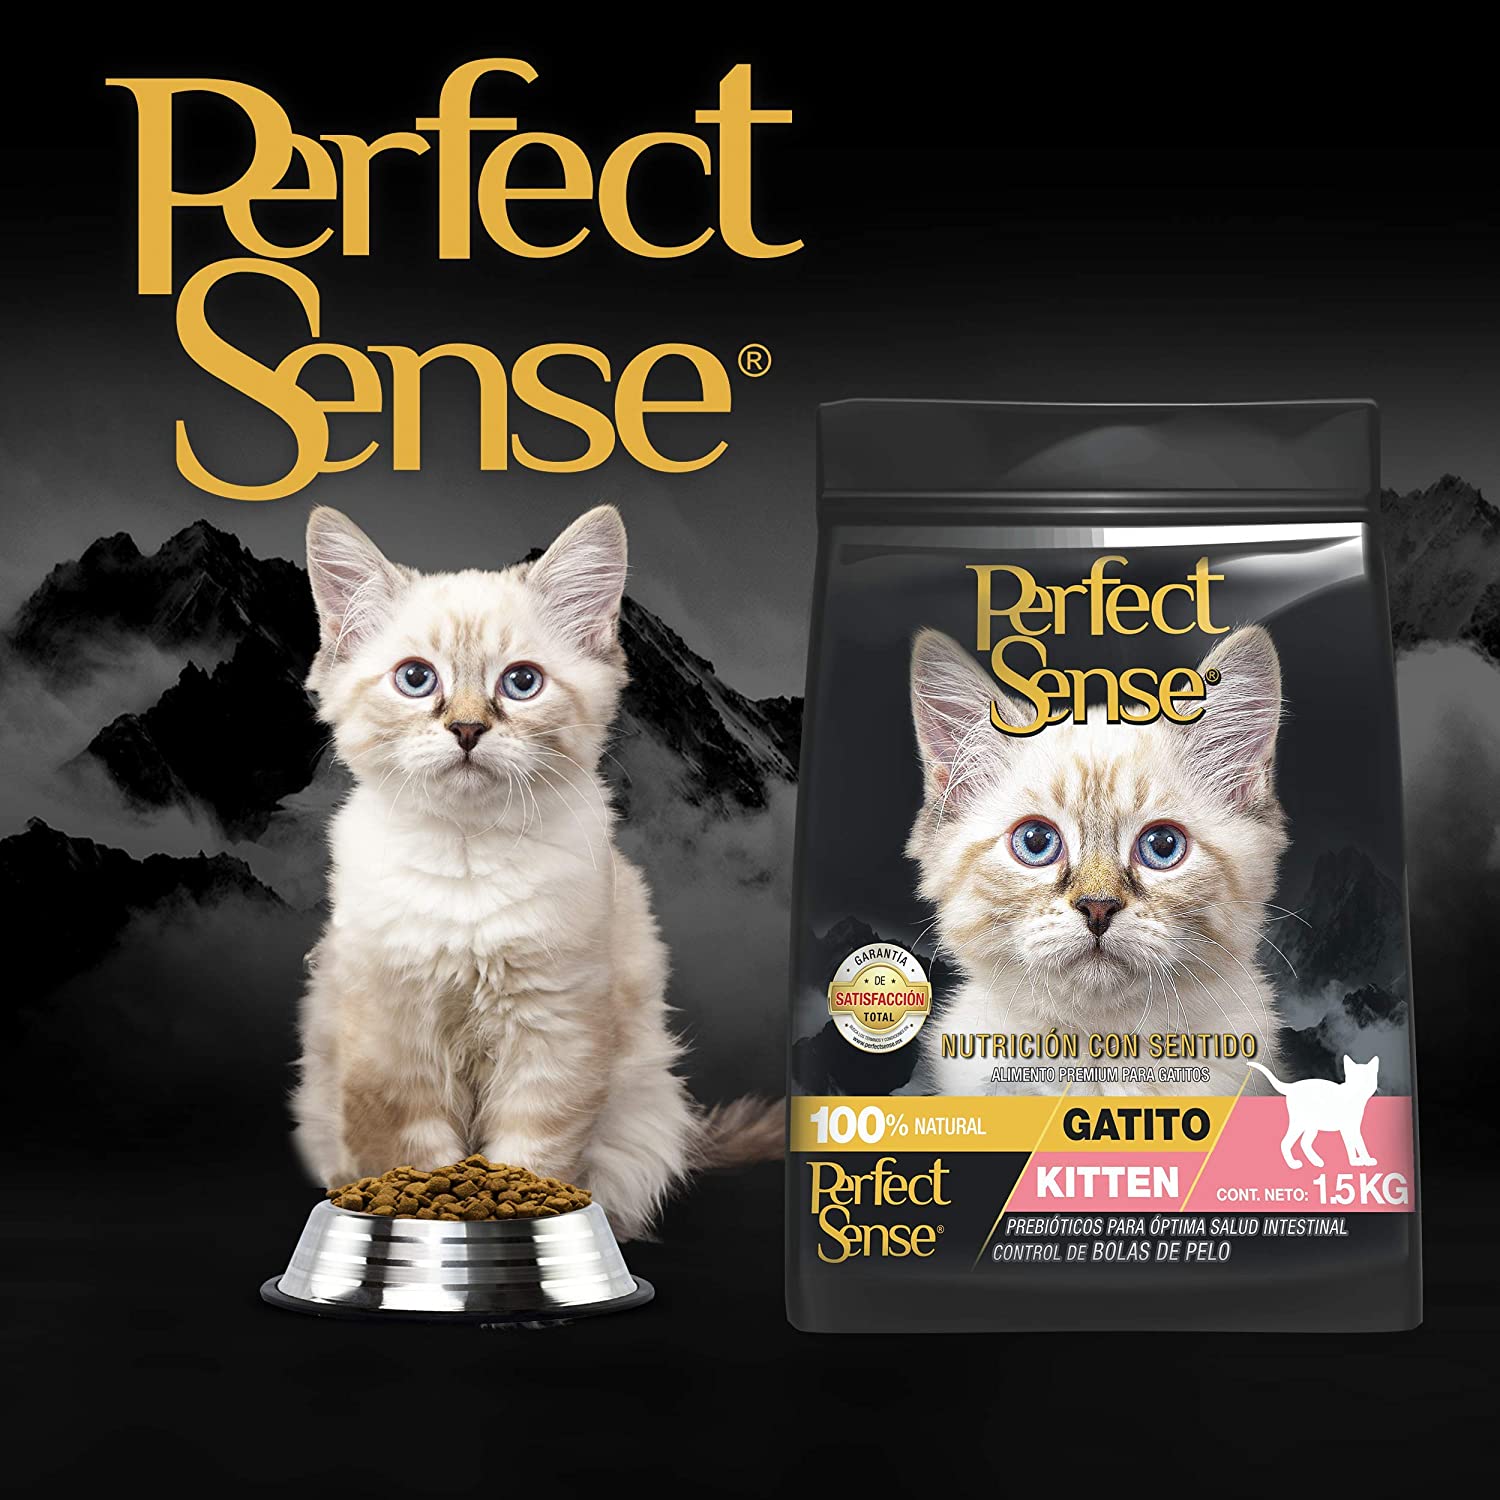 Perfect Sense Kitten 1.5 KG